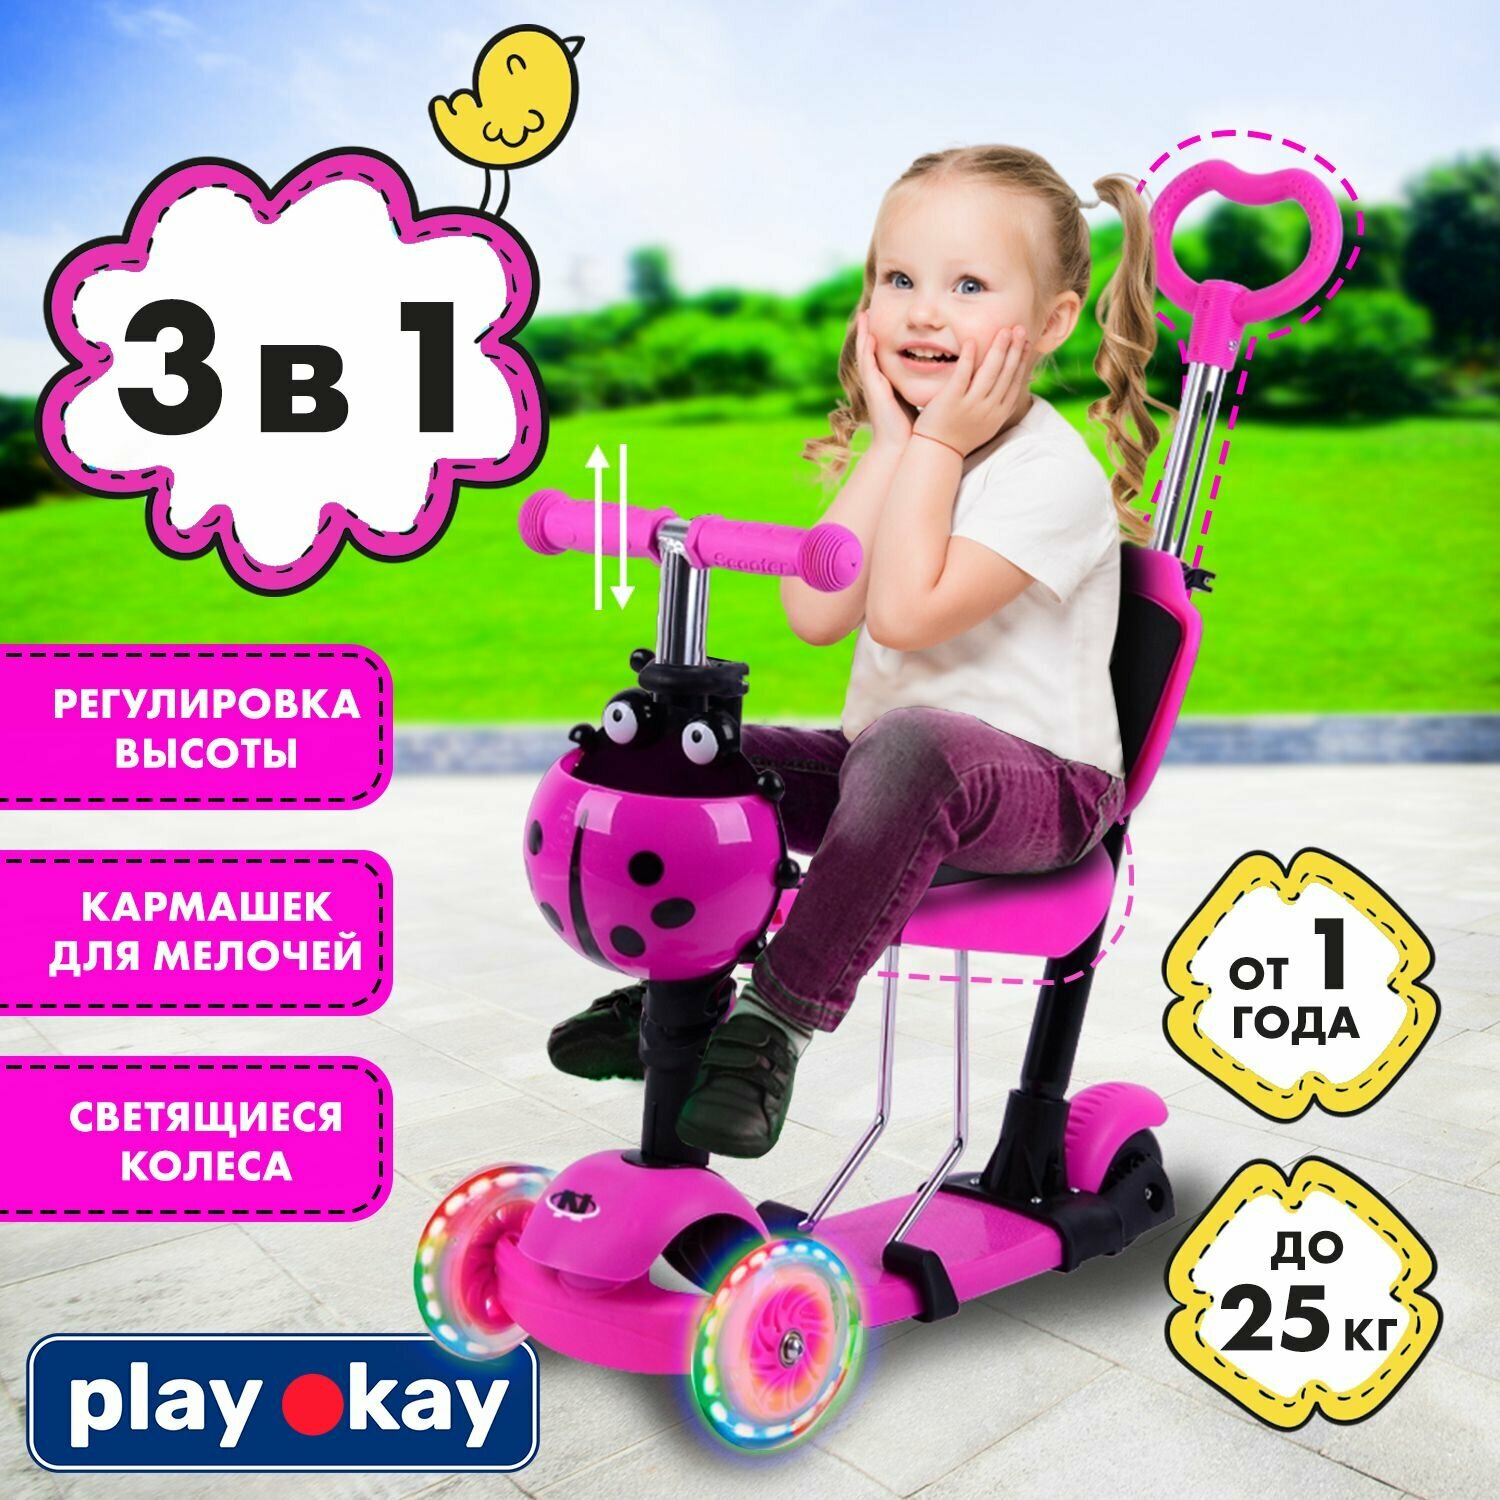 Самокат трехколесный детский с сиденьем и ручкой Play Okay H23060701 трансформер 3 в 1, для мальчика и девочки, регулировка высоты ручки, светящиеся колеса, корзина для мелочей ребенка, розовый